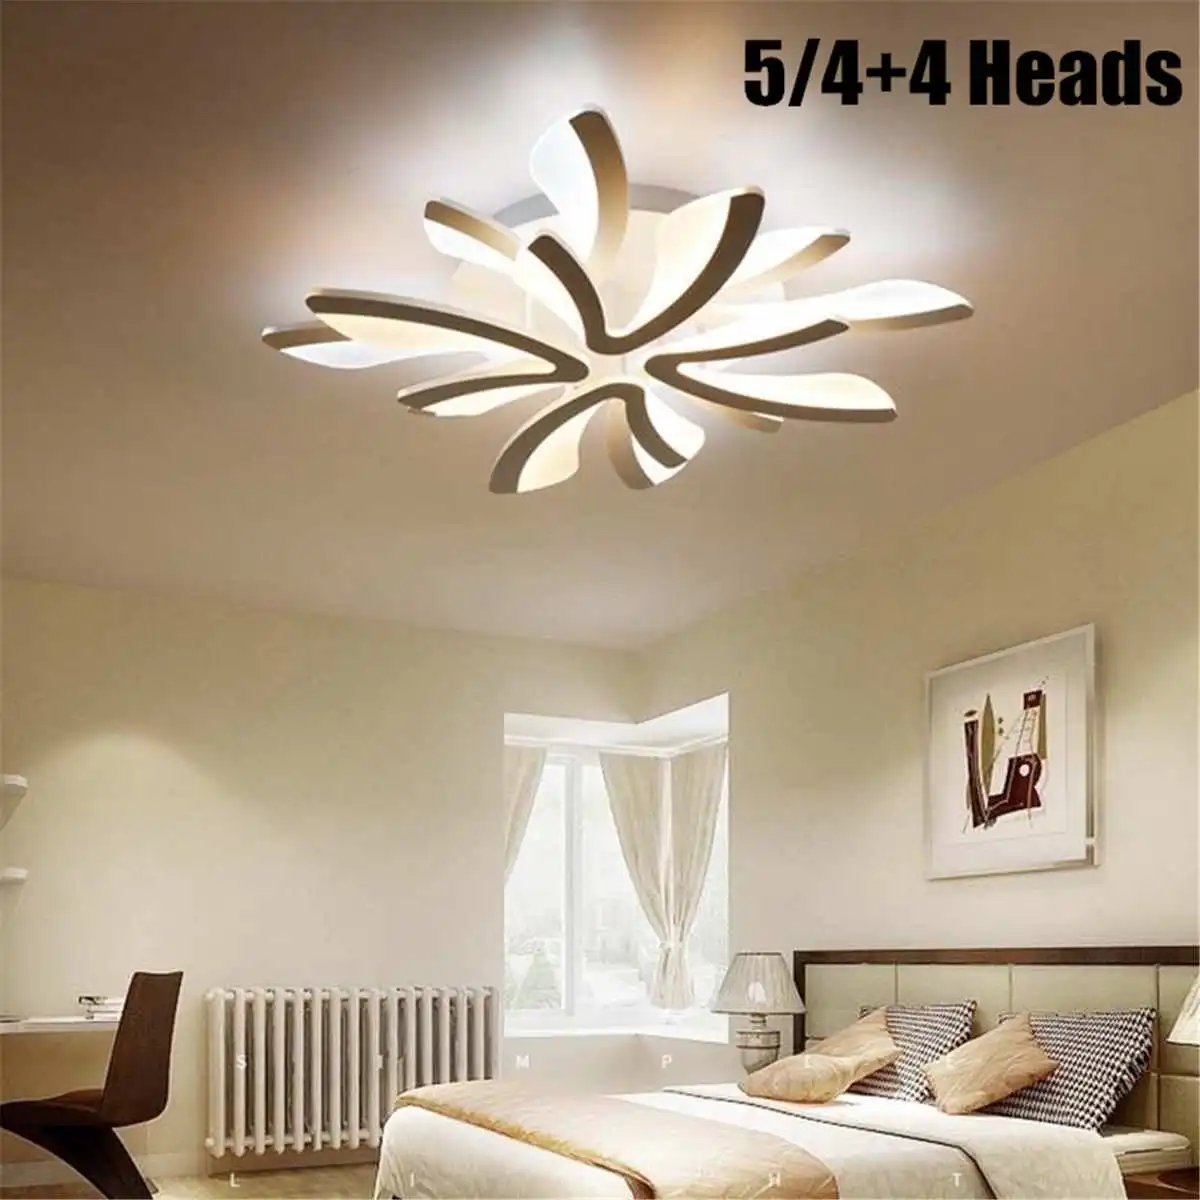 8 головок, акриловые современные светодиодные потолочные лампы для гостиной, спальни, столовой, домашний декор, потолочный светильник, светильник, светильники